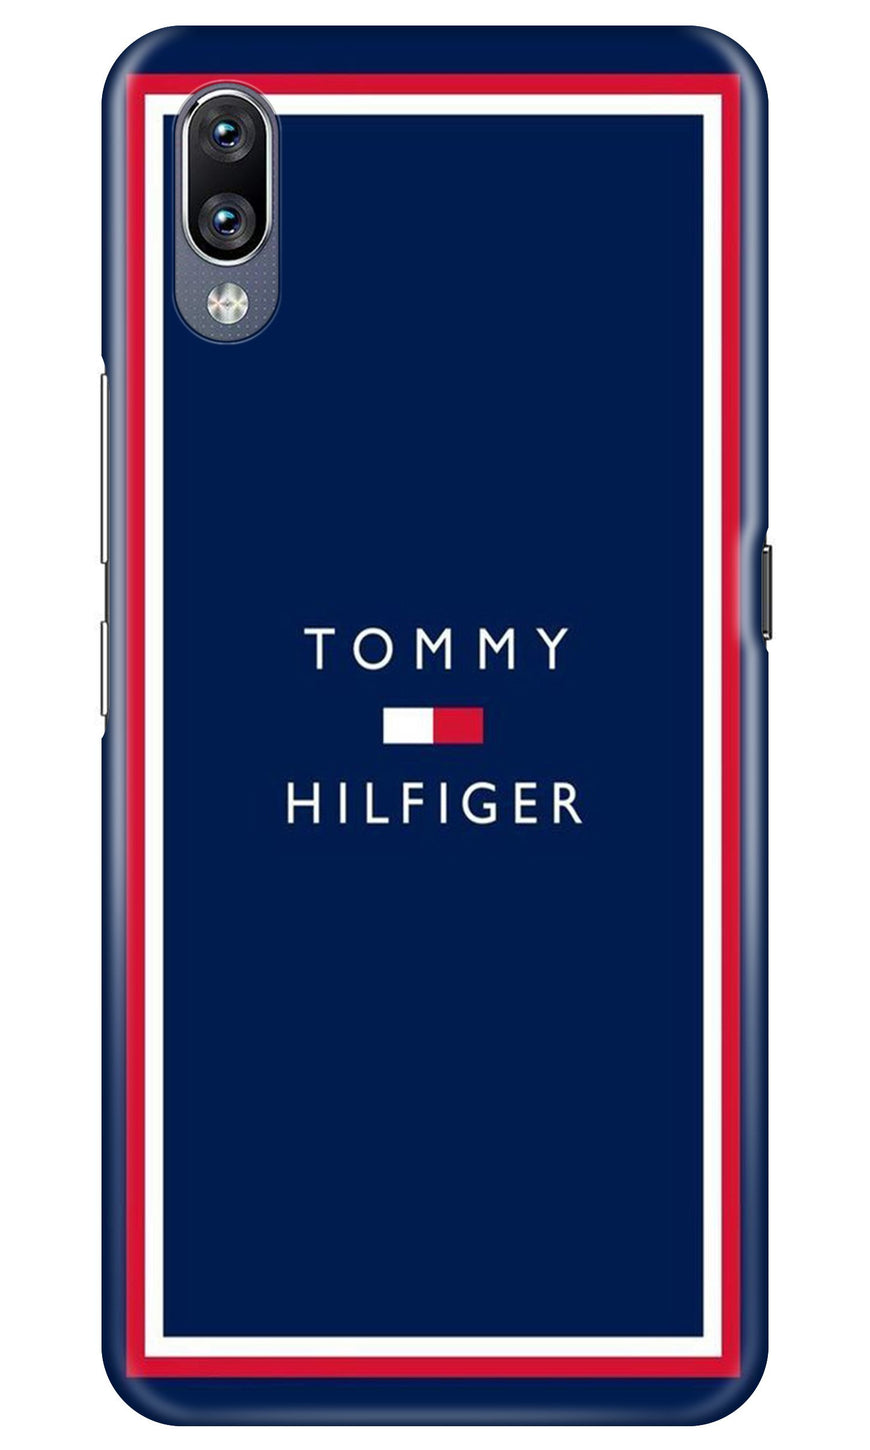 Tommy Hilfiger Case for Vivo Y91i (Design No. 275)